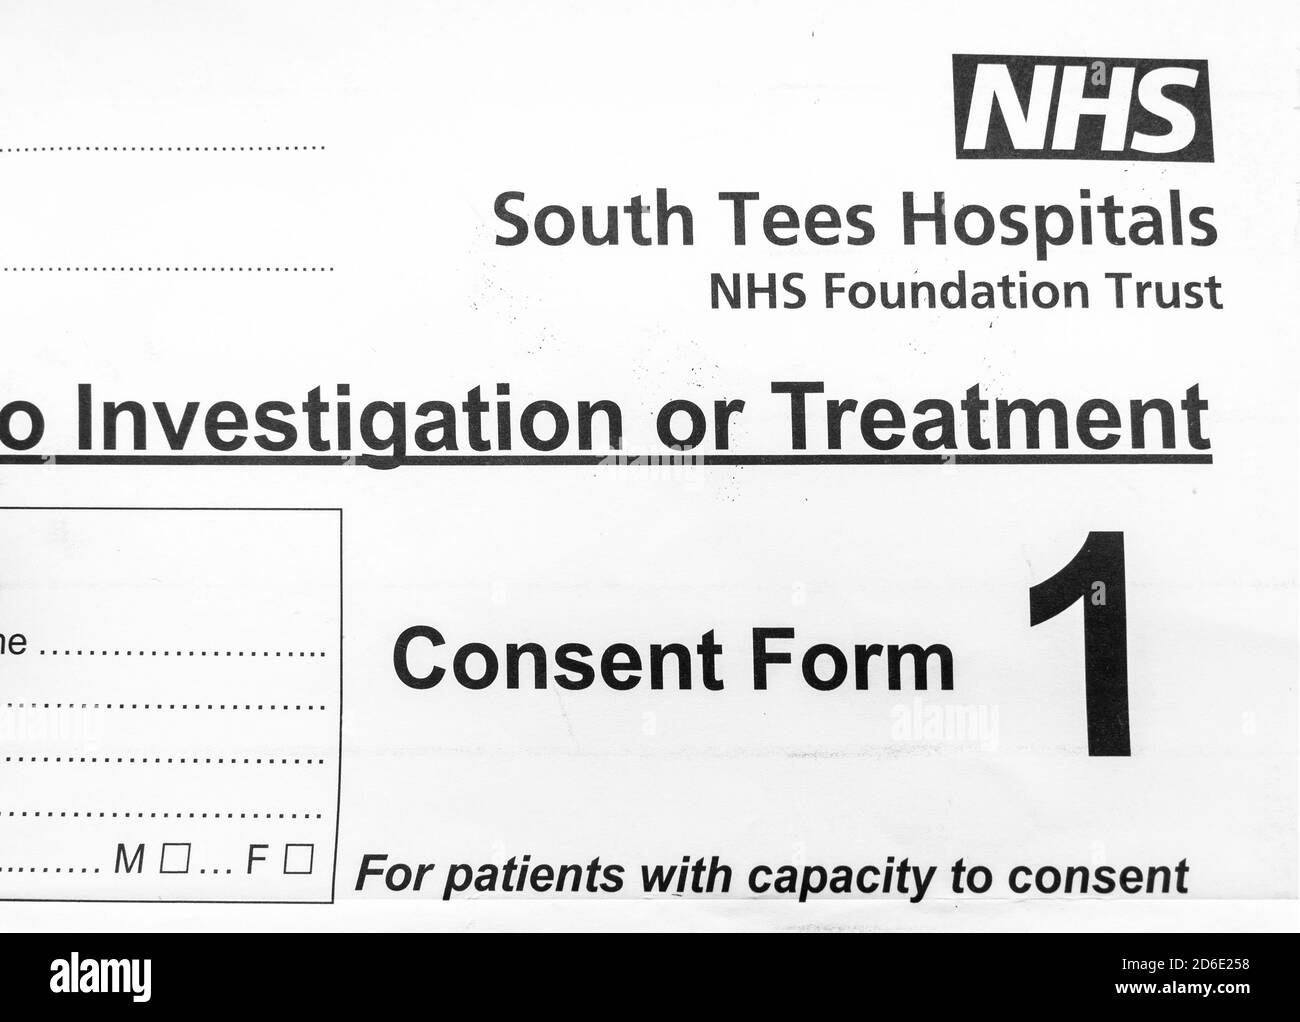 Formulaire de consentement des hôpitaux NHS South Tees, que les patients doivent signer avant de subir une opération, à moins qu'ils ne soient pas compétents pour le faire Banque D'Images